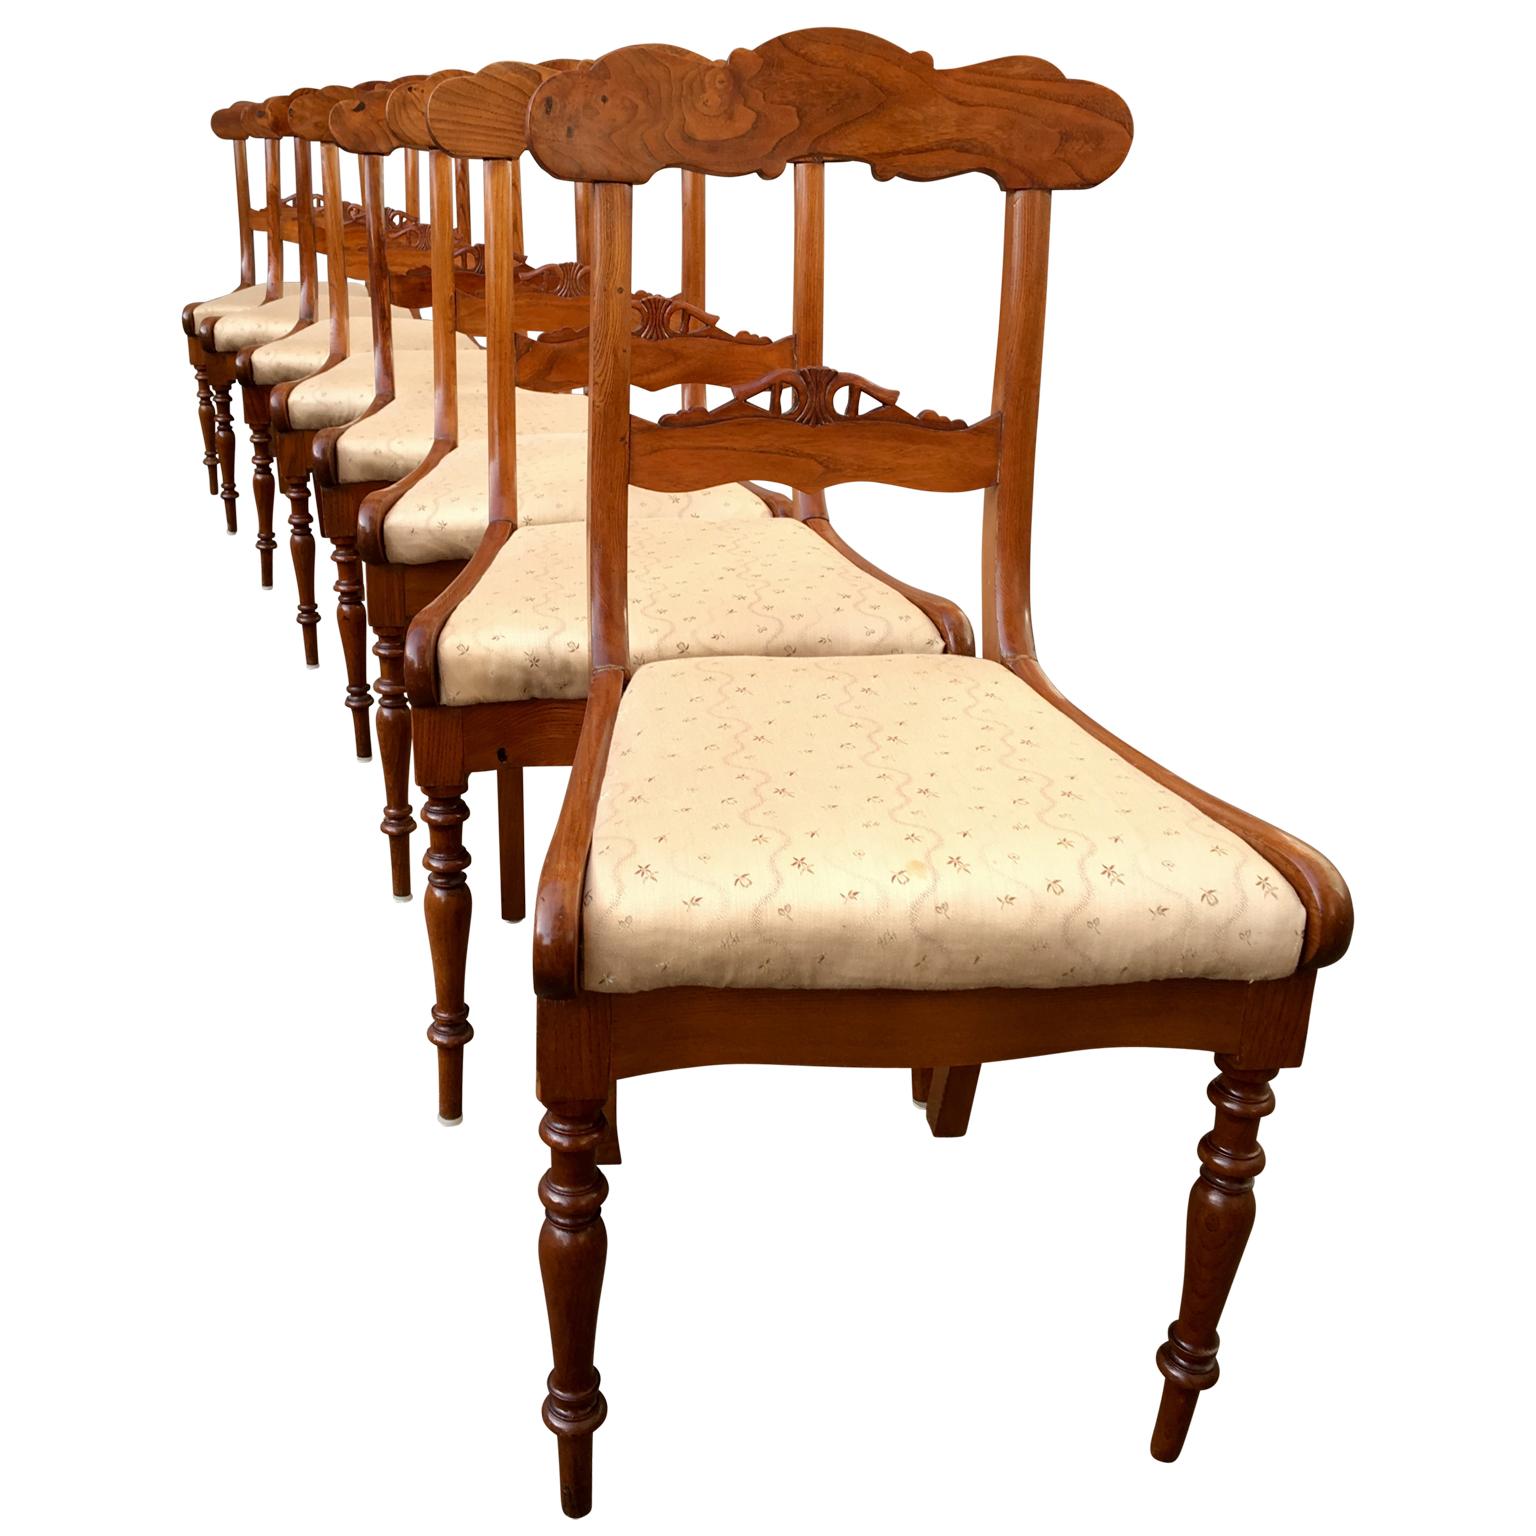 Satz von 8 schwedischen Biedermeier Stühlen aus geflammtem Ulmenholz für das Esszimmer.
Original abnehmbare Sitze machen es einfacher für den nächsten Besitzer, seine eigene gewählte Gewebe auf diesem skandinavischen Satz von Stühlen bieten.